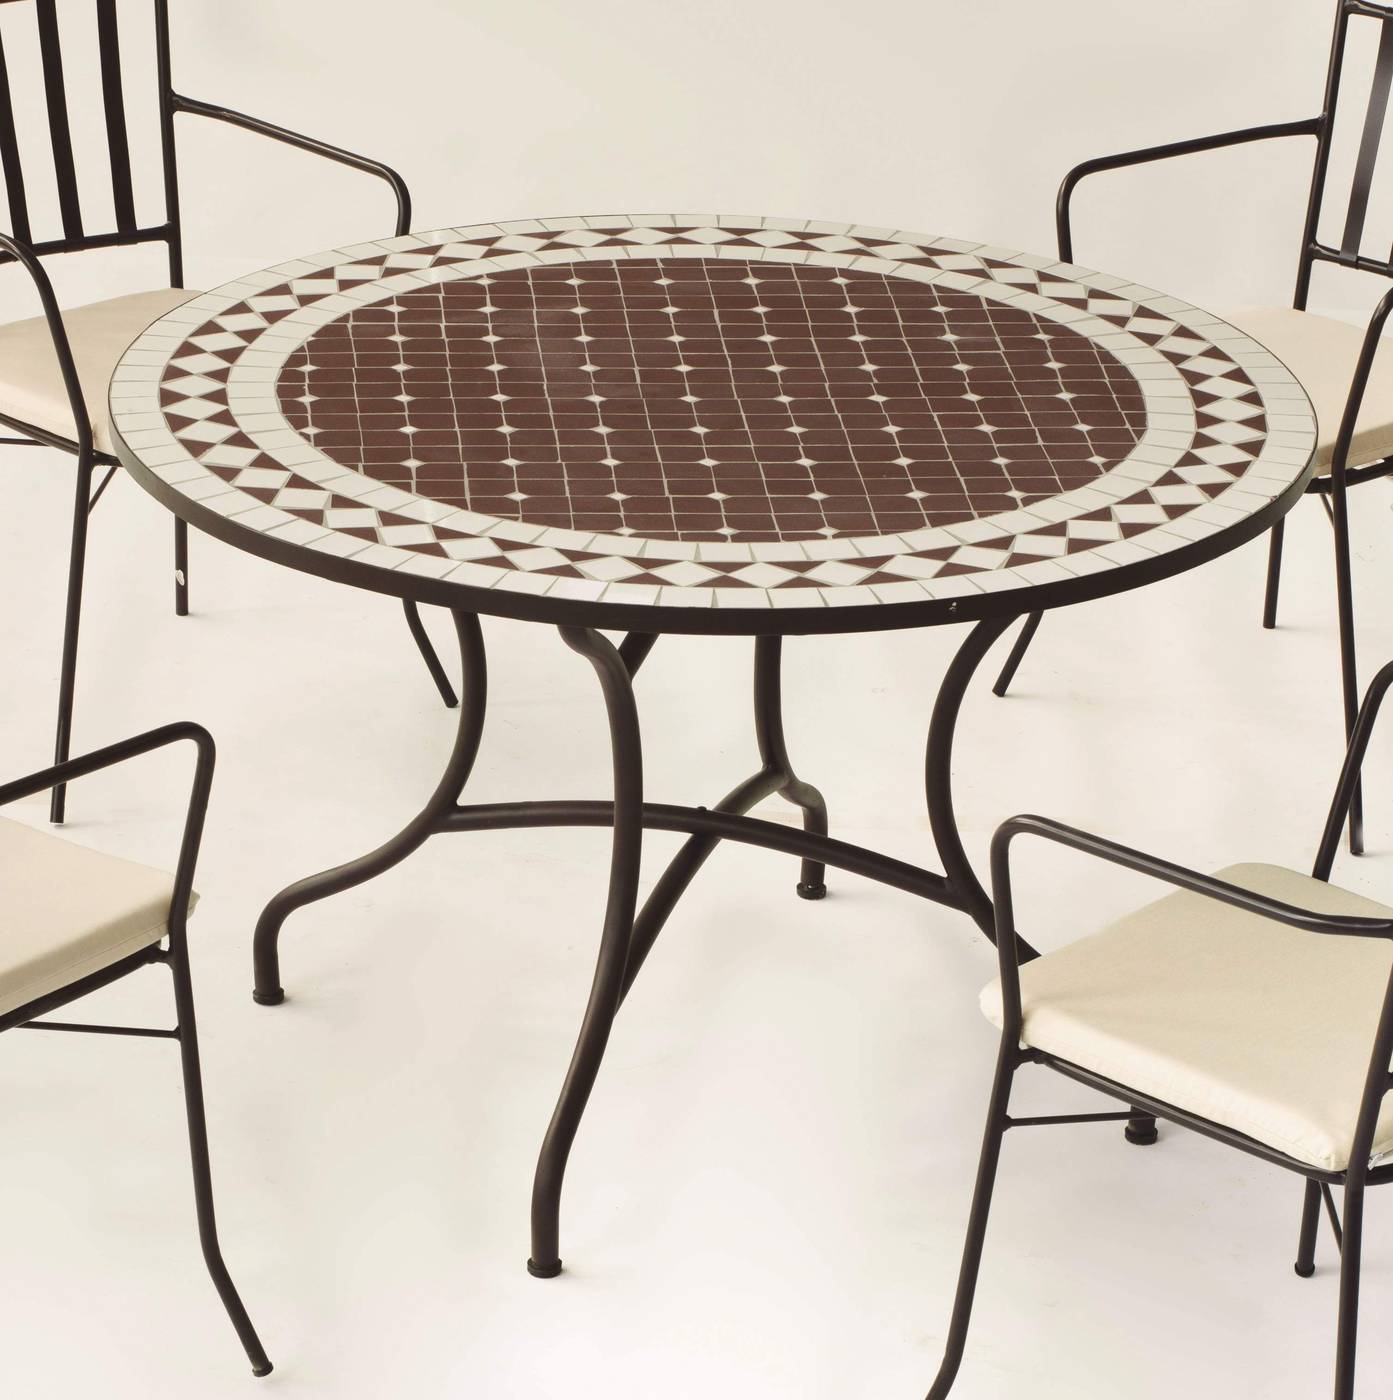 Conjunto Mosaico Alondra120-Bergamo - Conjunto de forja color marrón: mesa con tablero mosaico de 120 cm + 4 sillones de ratán sintético con cojines.